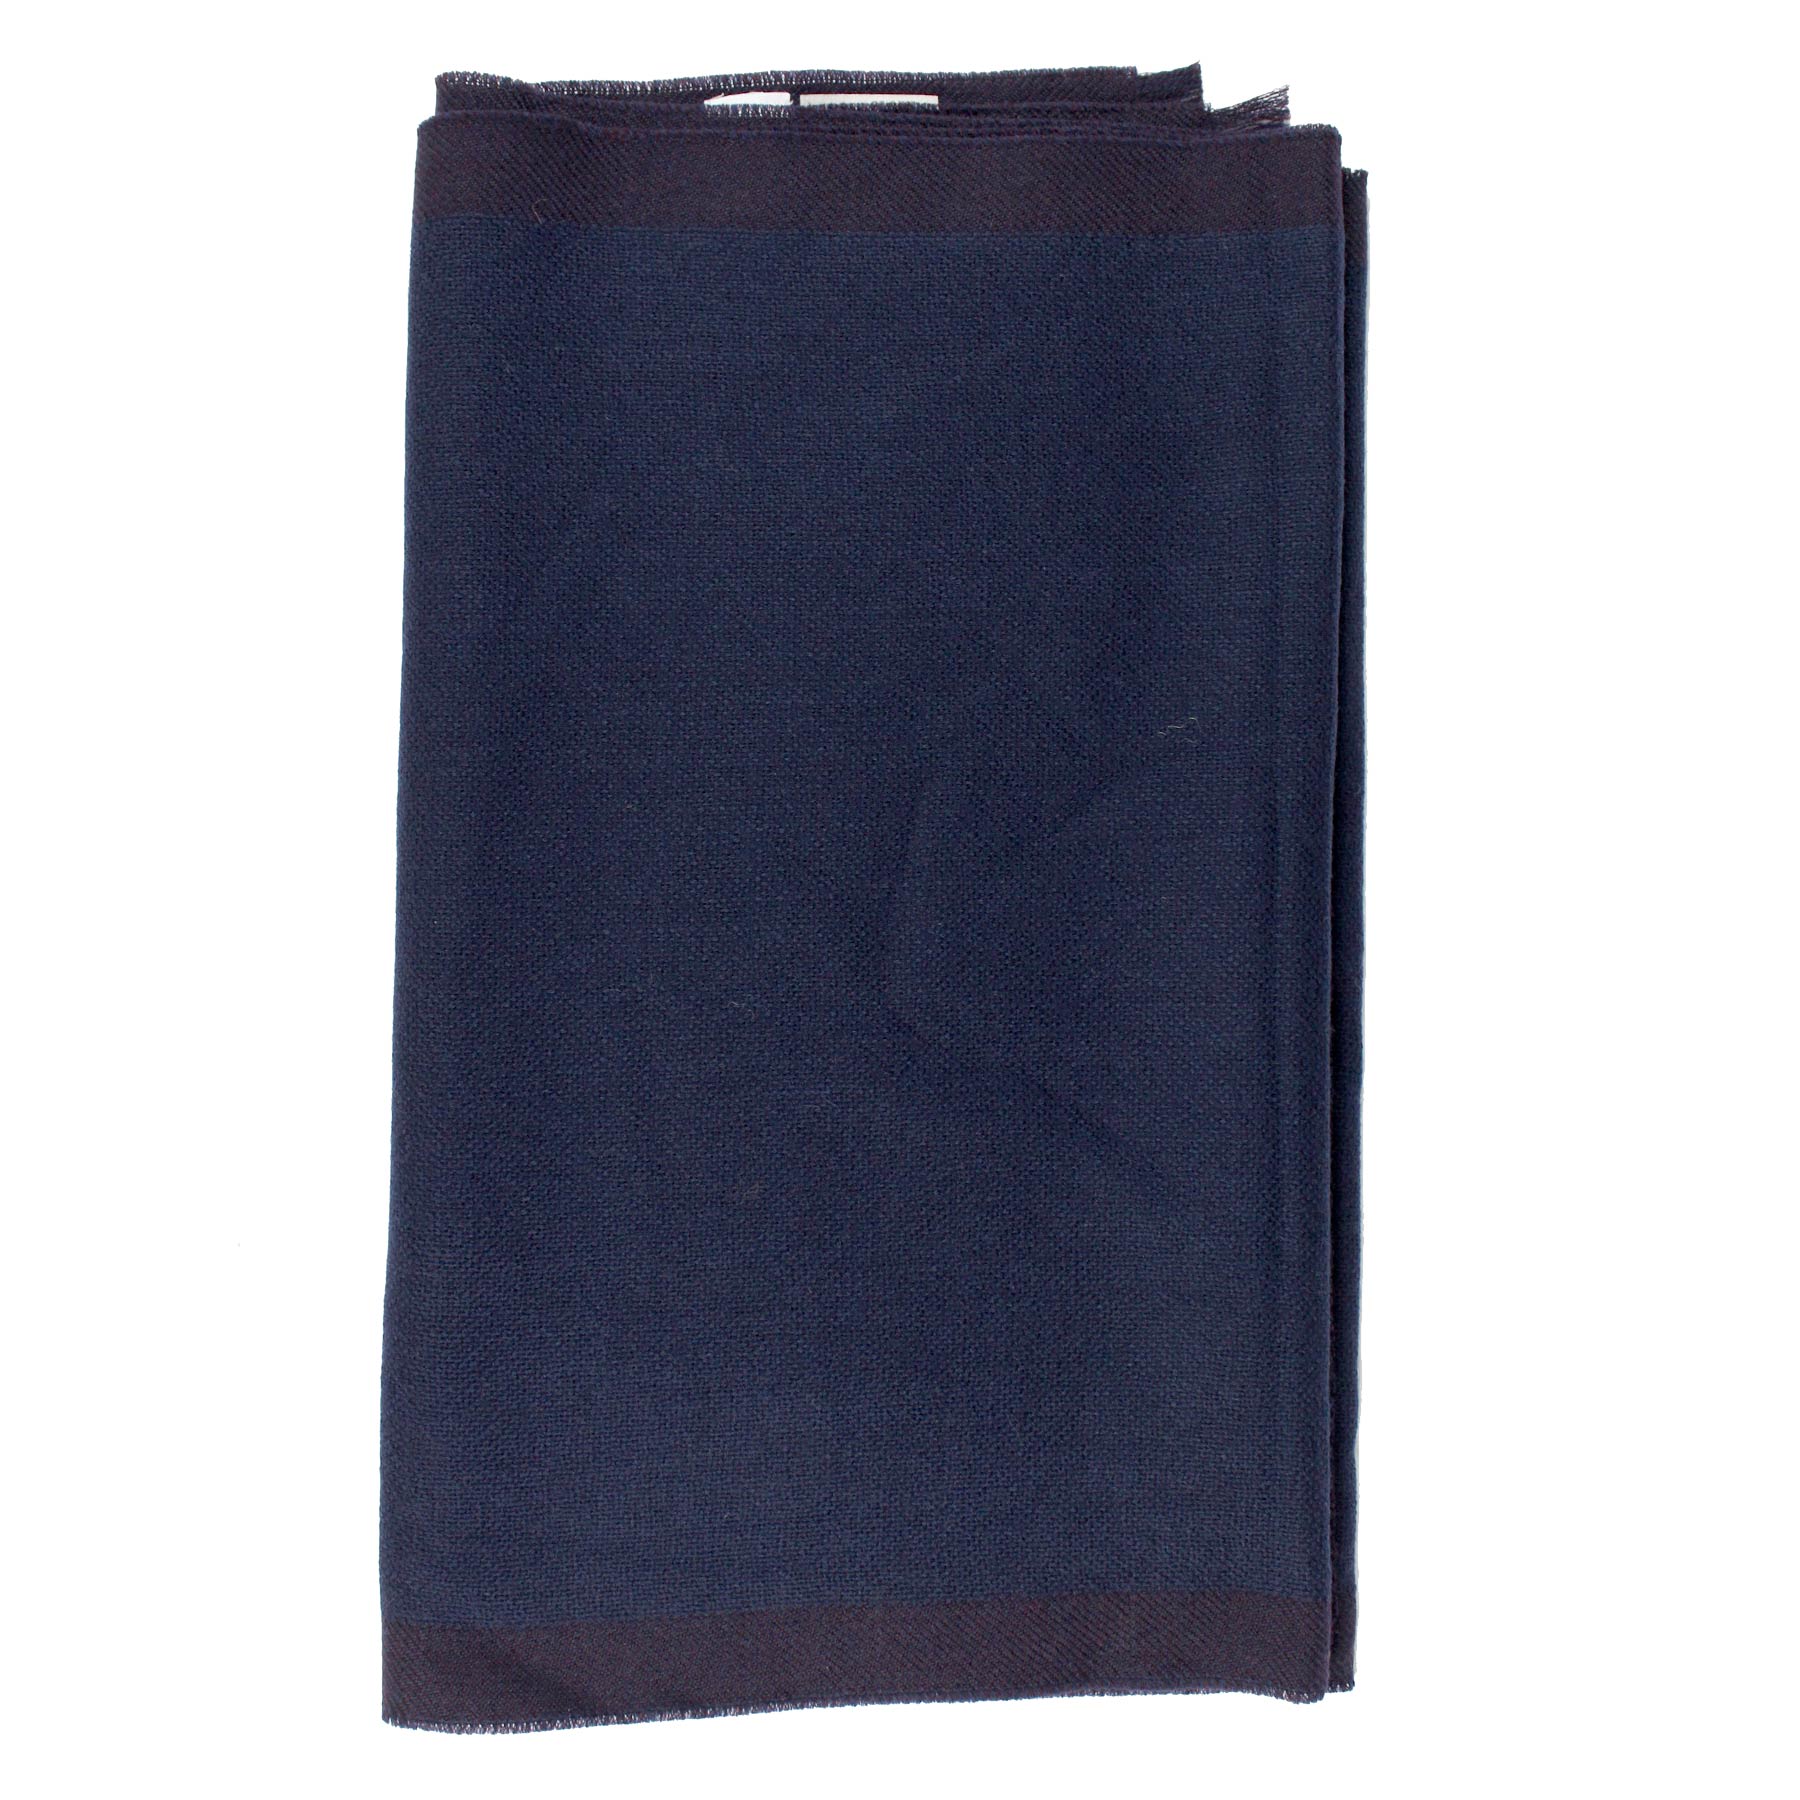 Agnona Scarf Dark Blue Design - Luxury Wool Shawl FINAL SALE